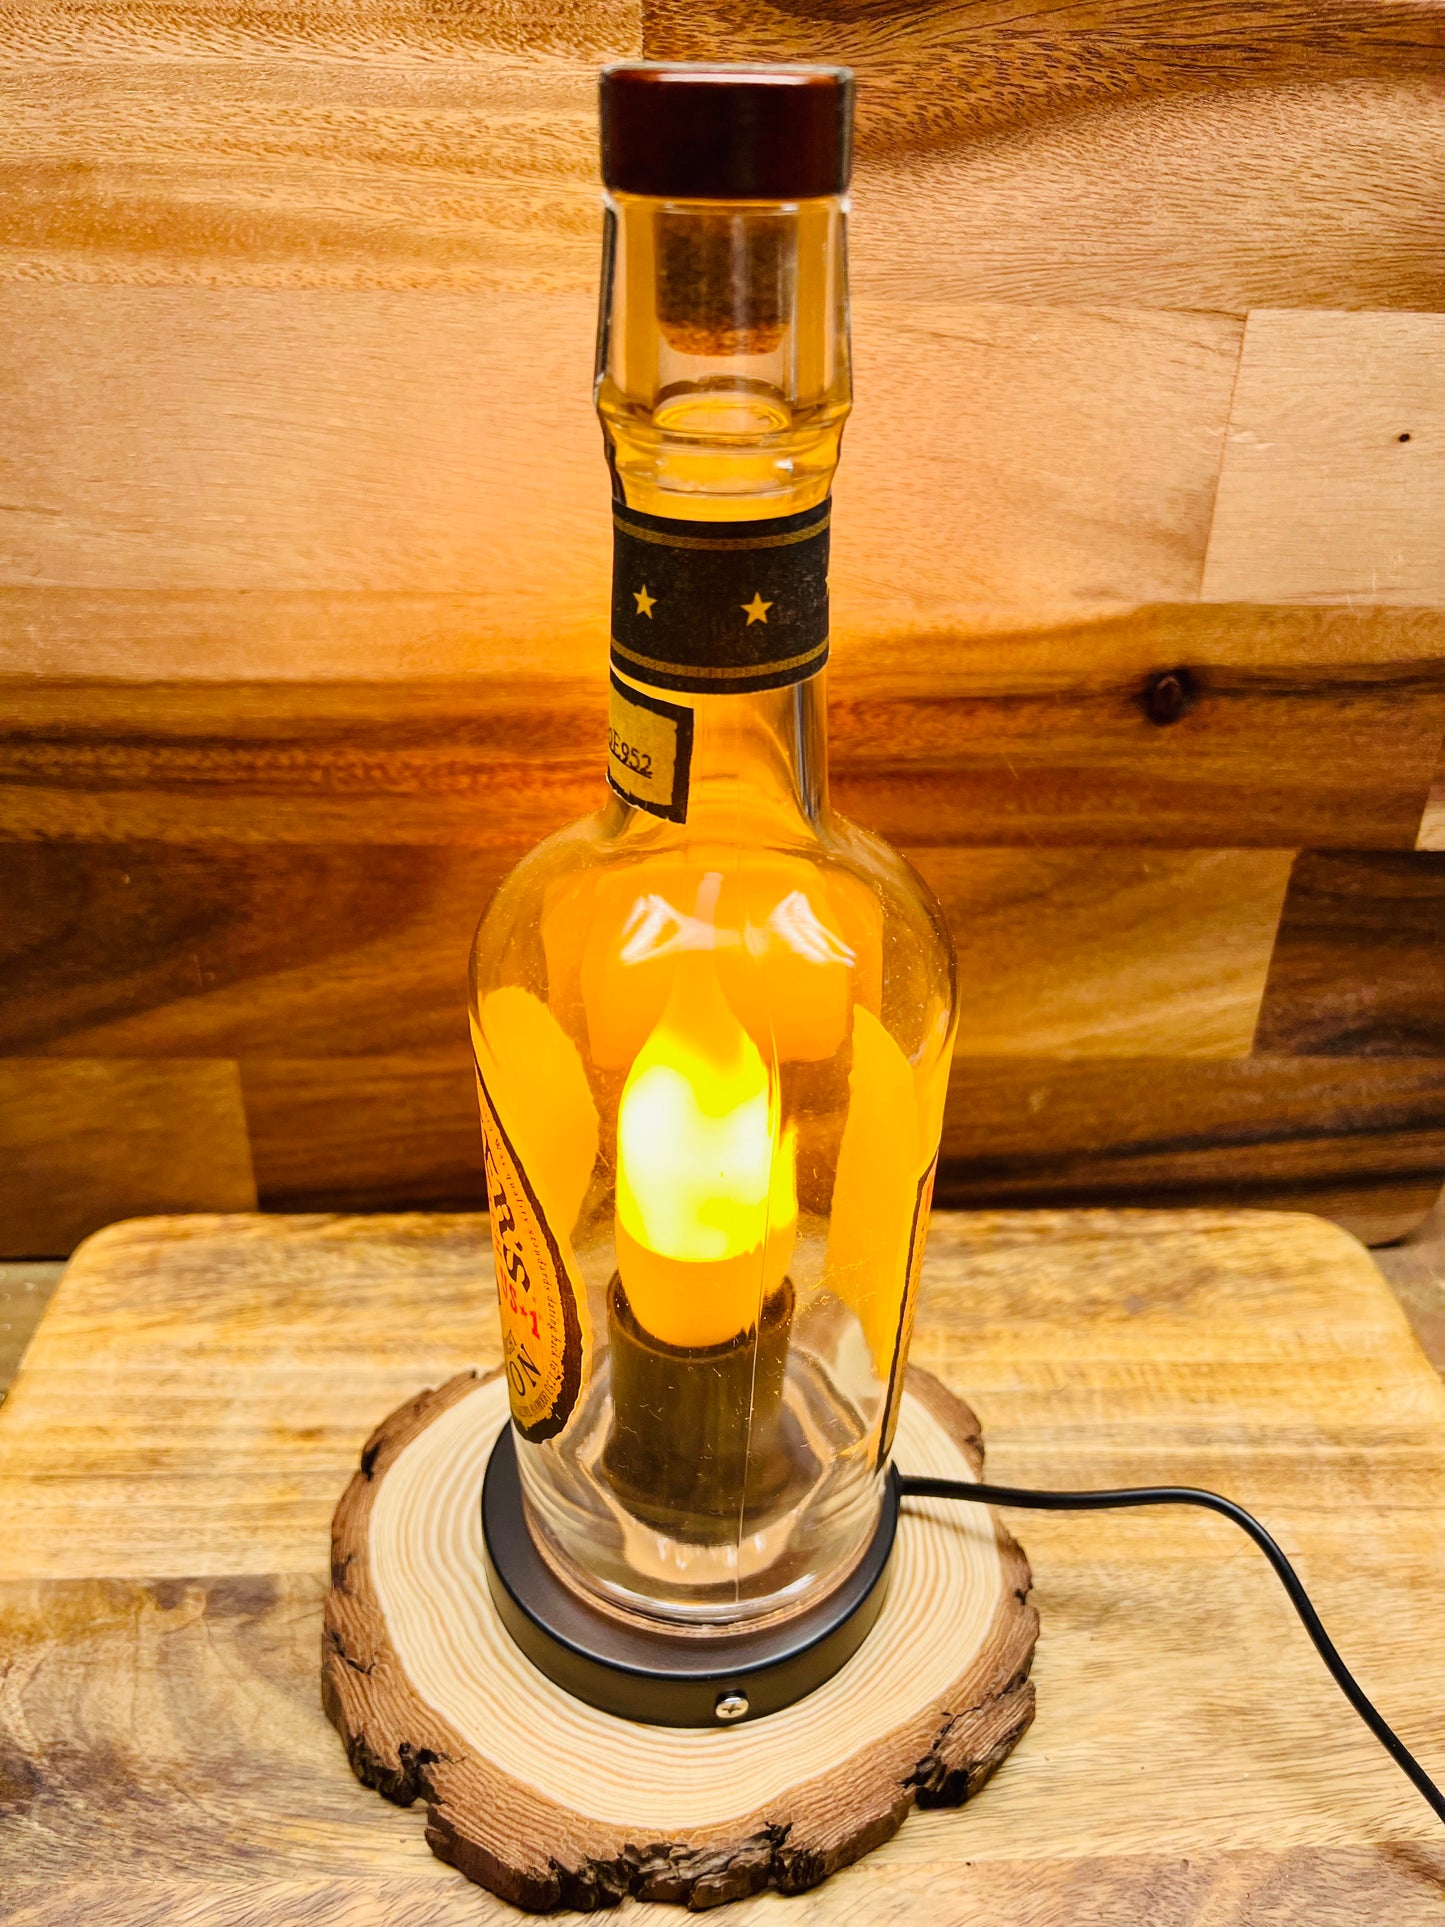 Michter's Bourbon Bottle Lamp